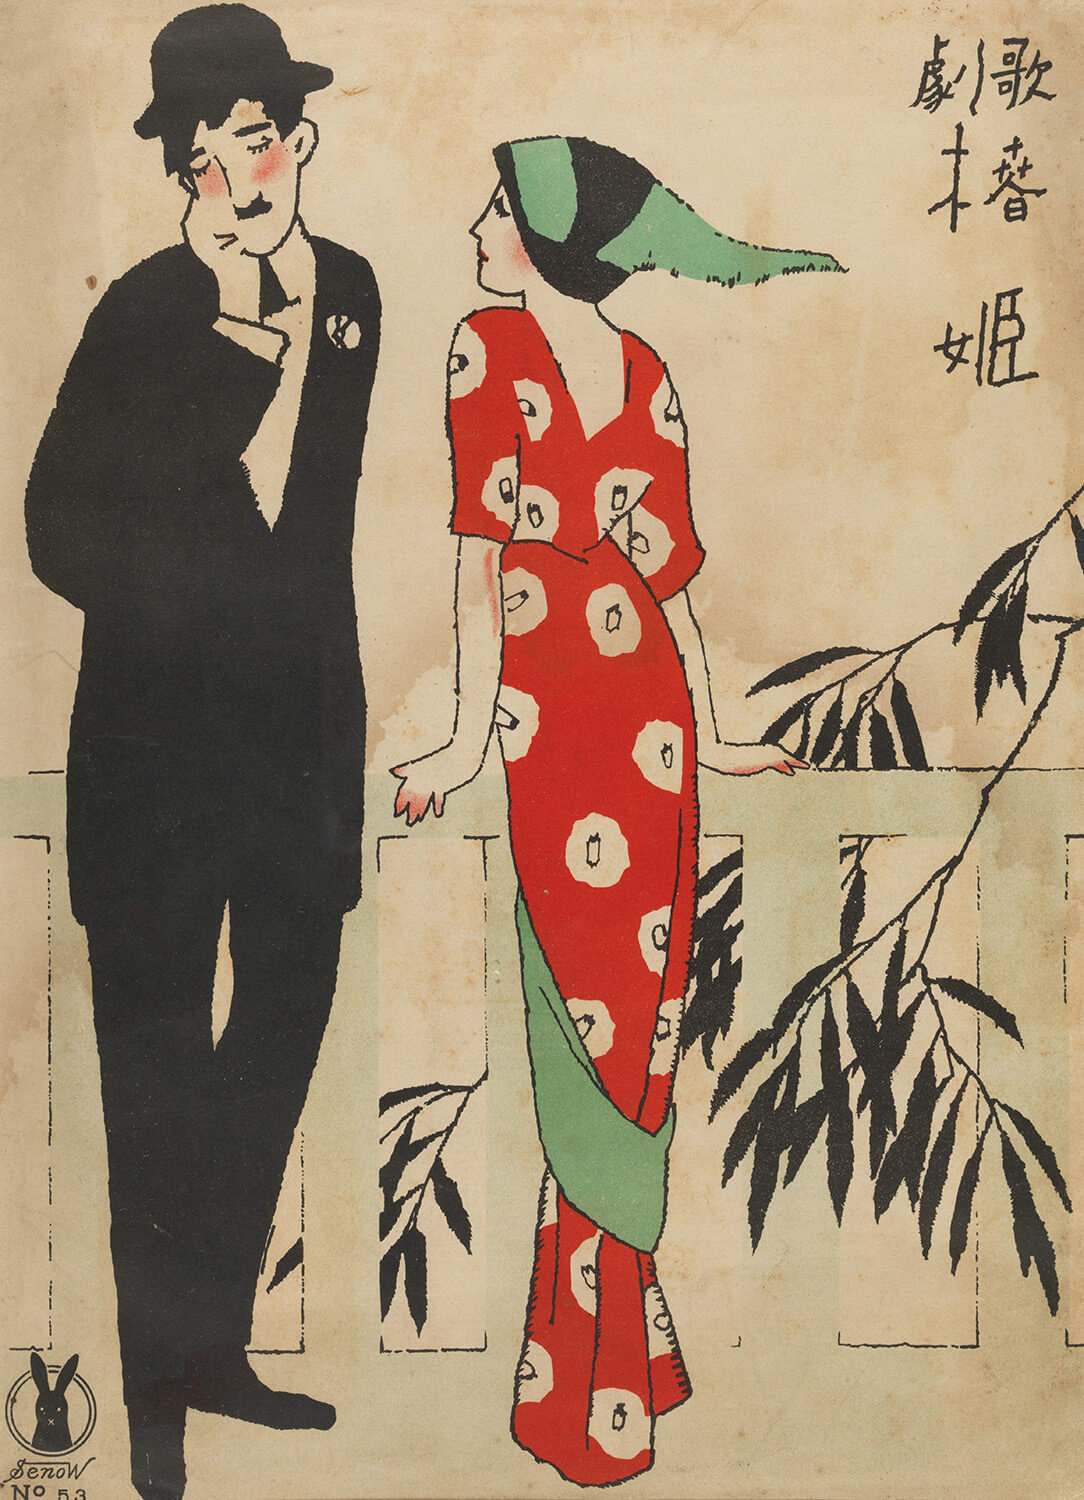 他形塑了日系美學！竹久夢二和他的女人們_「浪漫1920s_–_竹久夢二的視界」2.竹久夢二樂譜版畫作品〈茶花女〉_.jpg